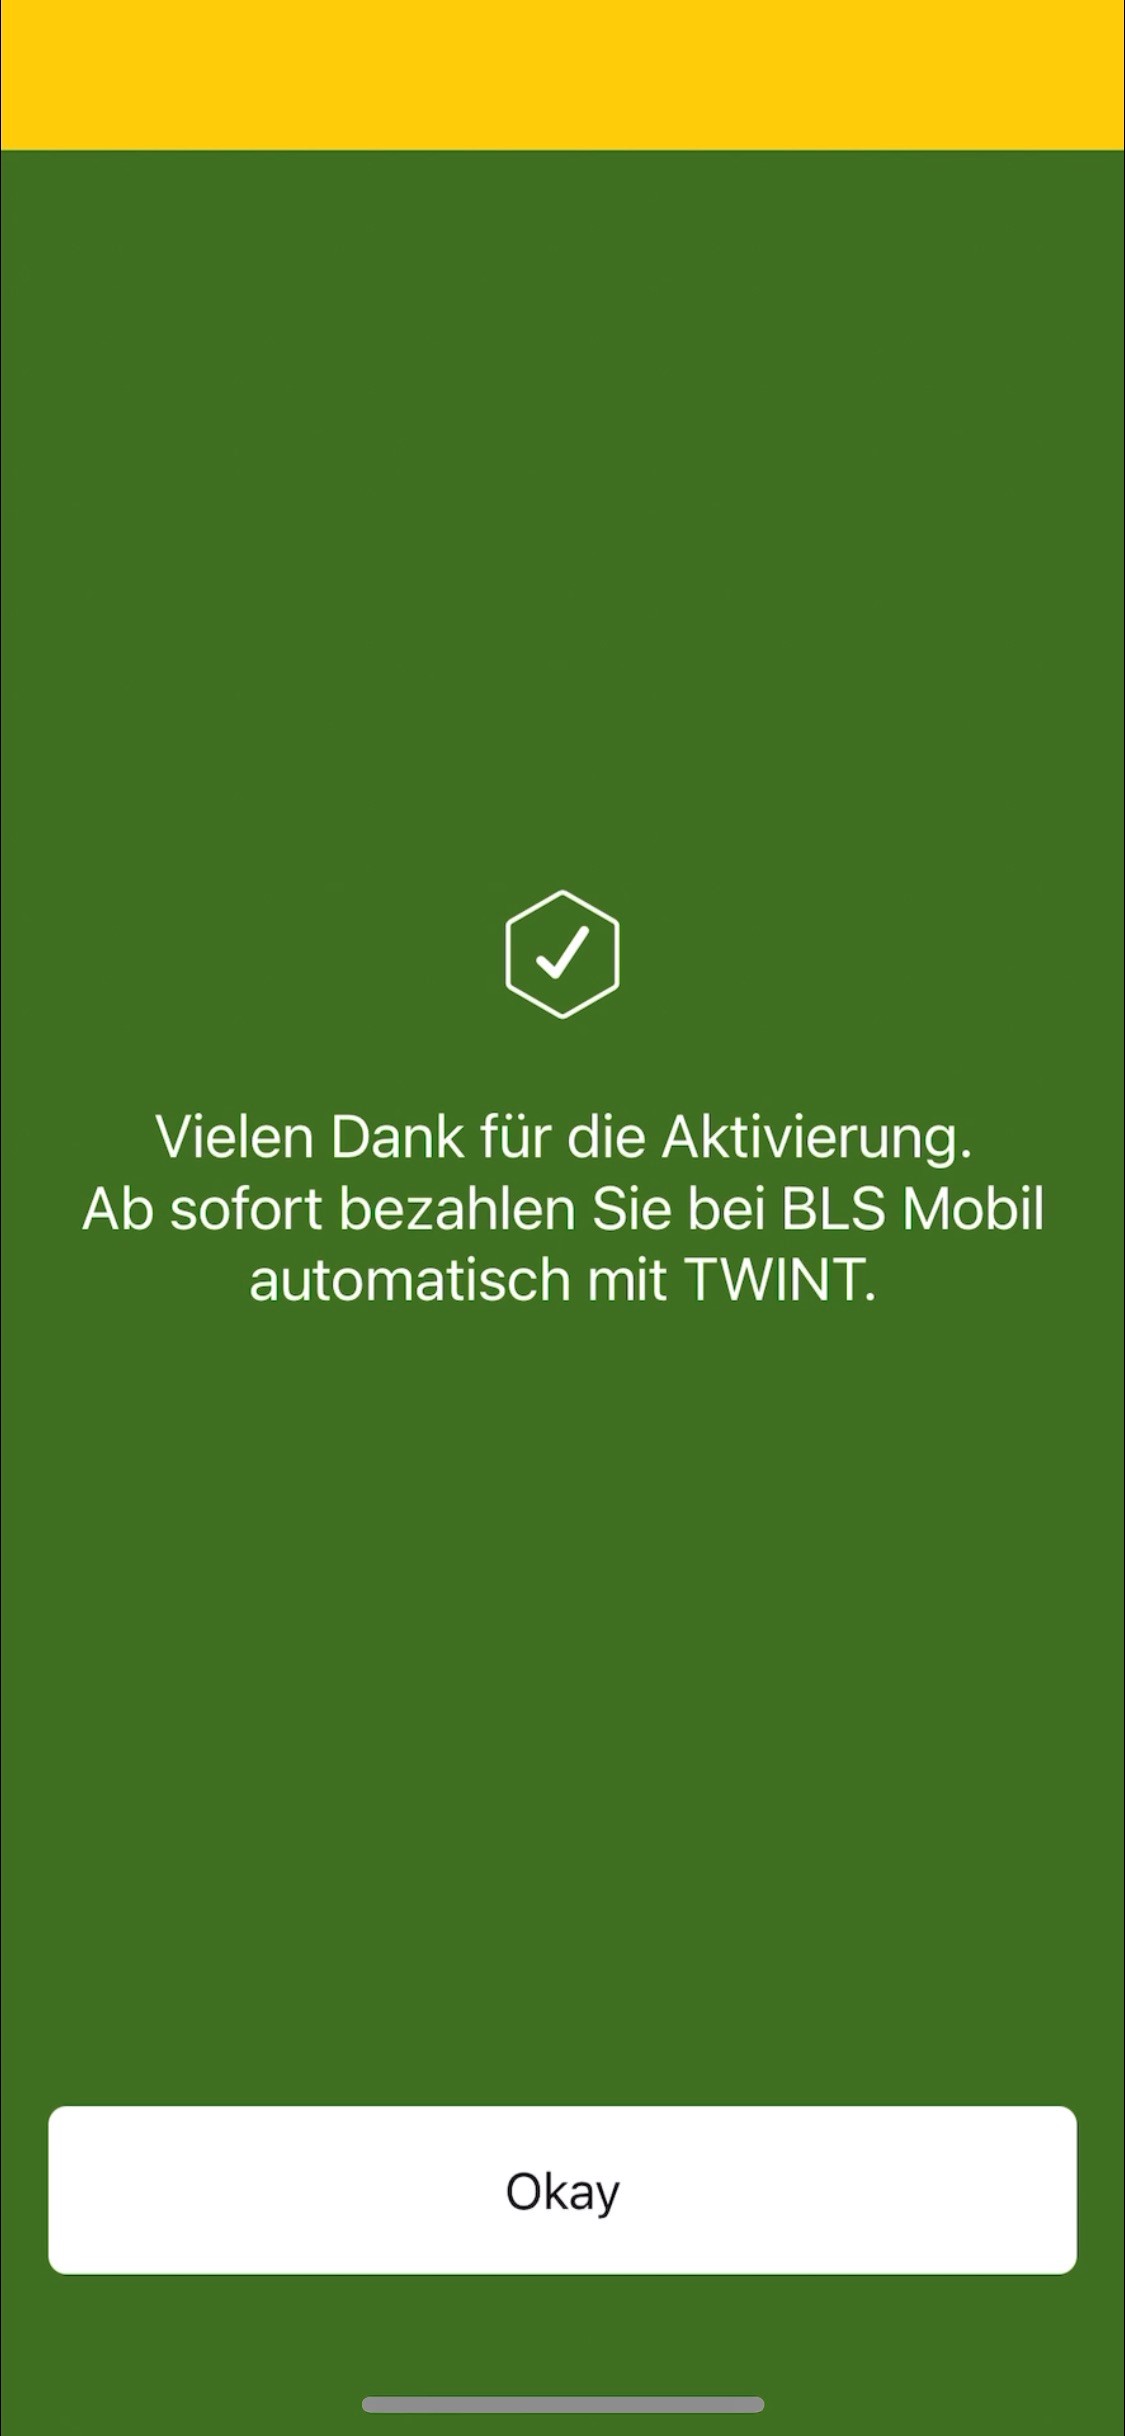 BLS_Mobil_Twint_aktiviert.jpg